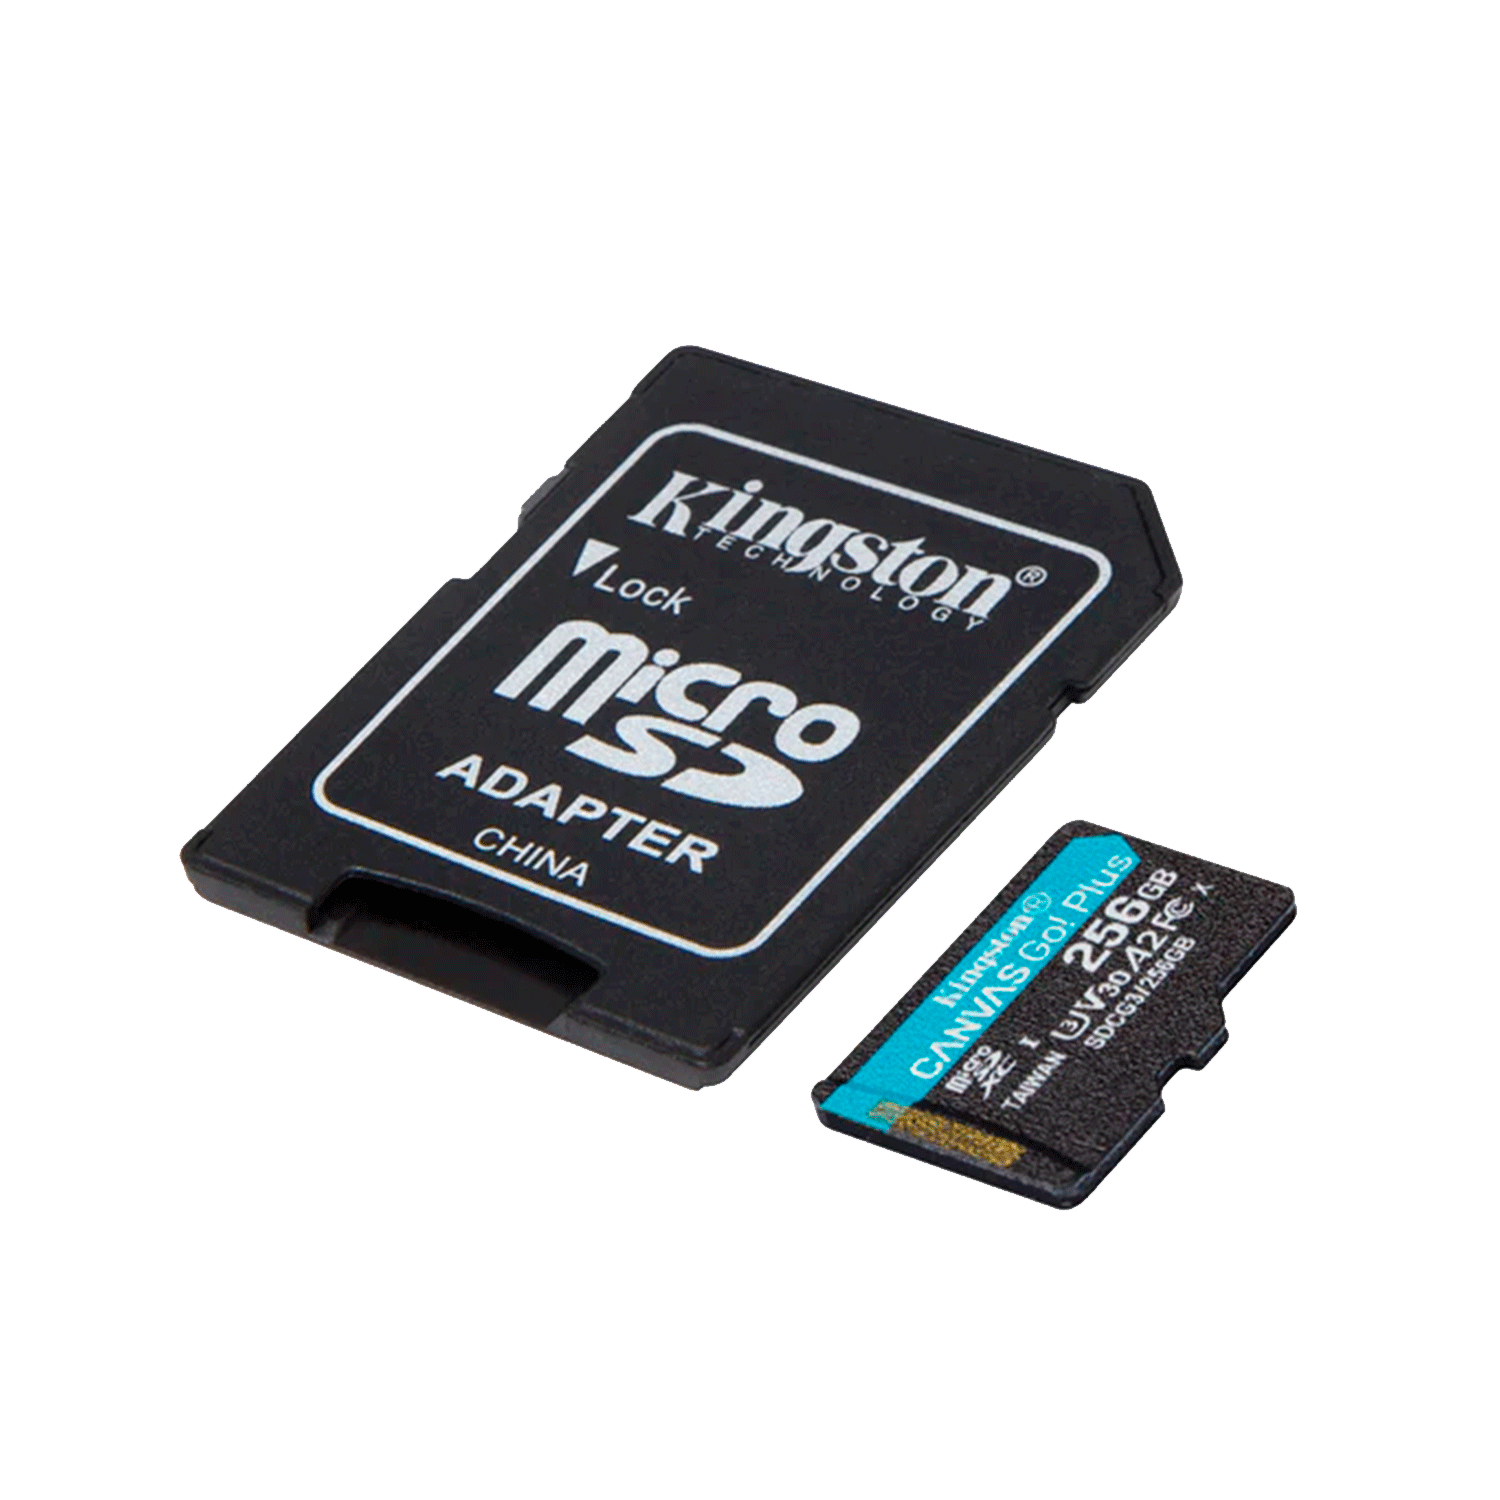 Cartão de Memória Micro SD Kingston Canvas Go Plus 256GB 170MBS / 90MBS - (SDCG3/256GB)